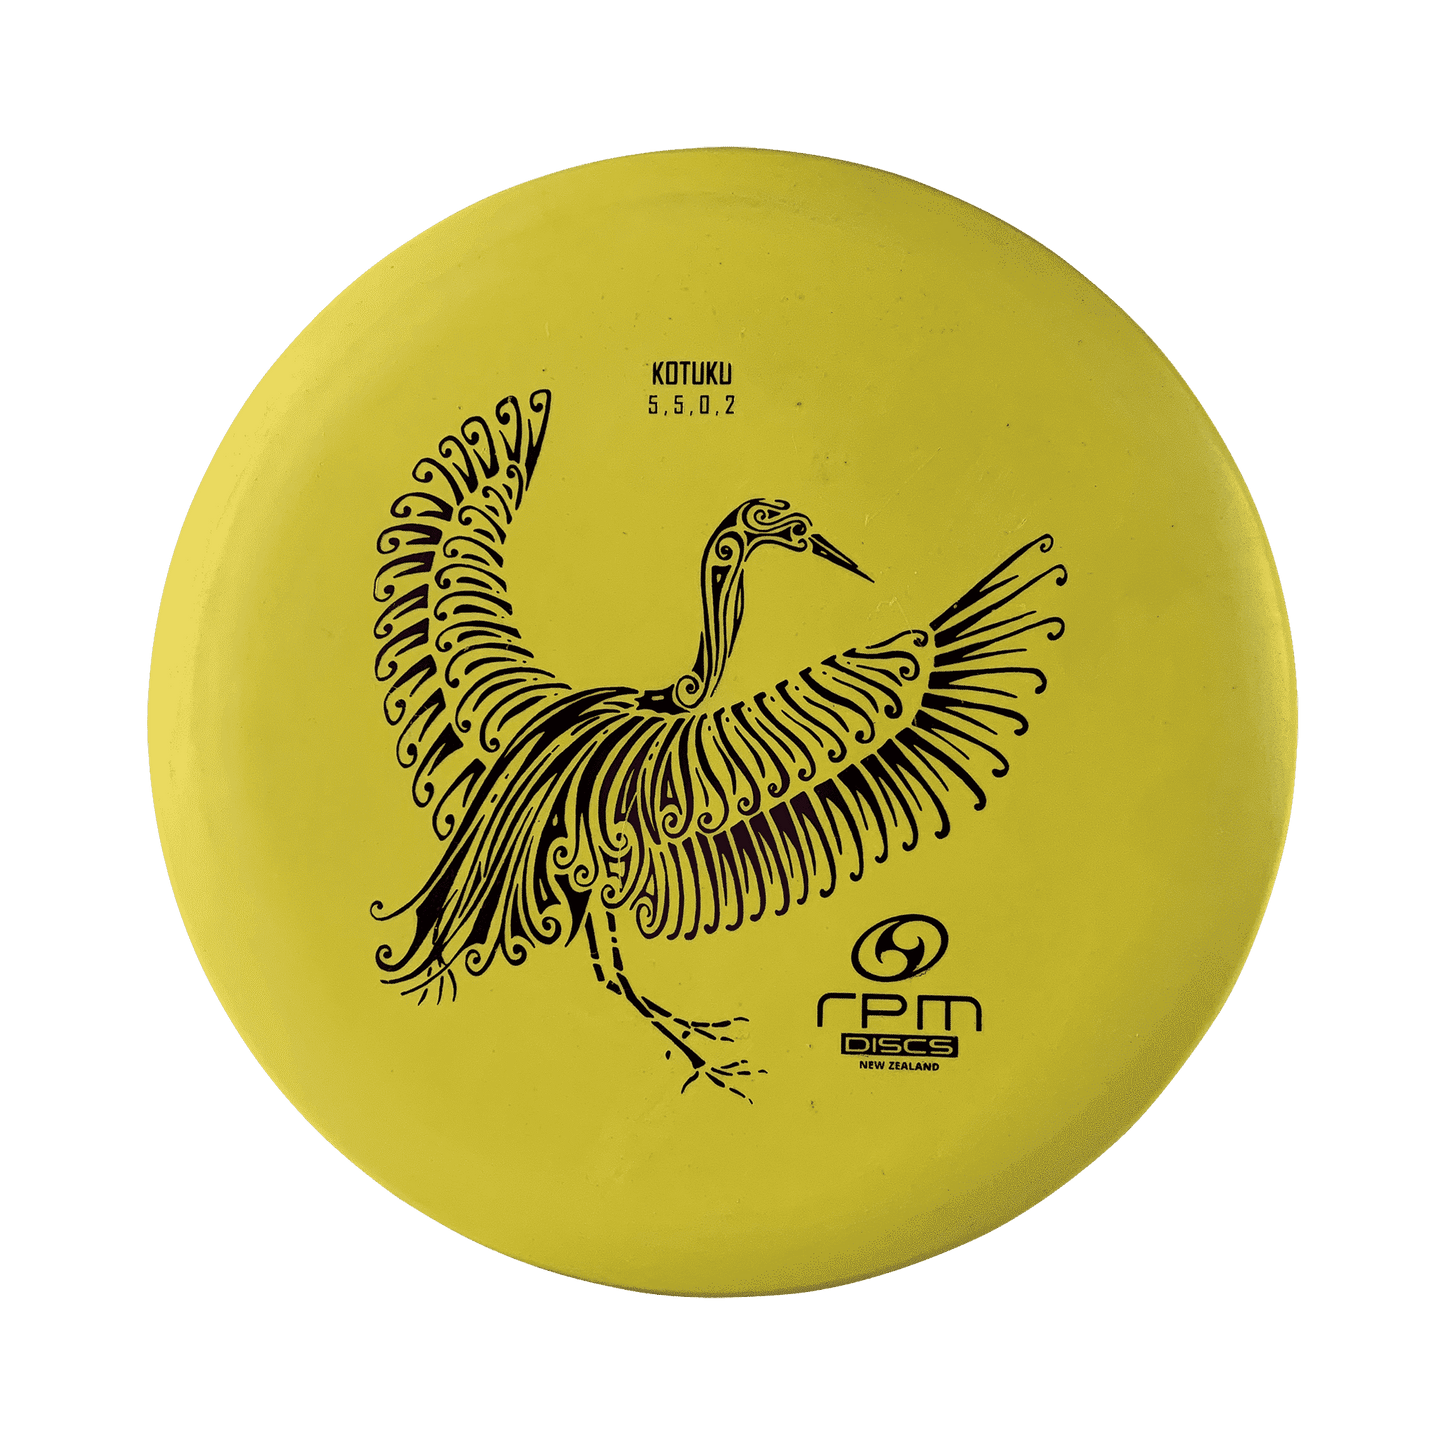 Strata Kotuku Disc RPM Discs yellow 178 